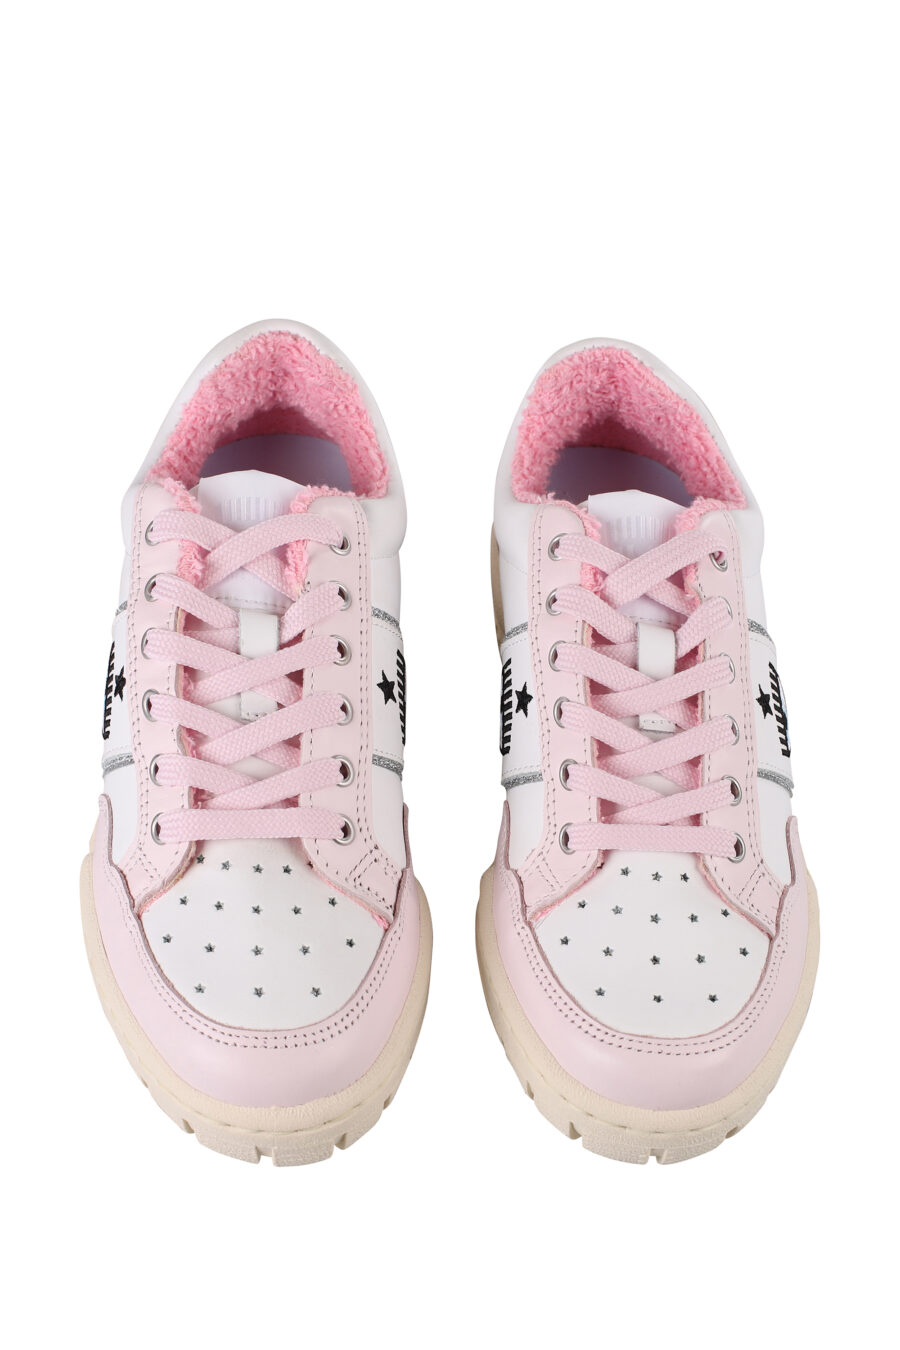 Zapatillas blancas y rosas con logo ojo e interior felpudo - IMG 1230